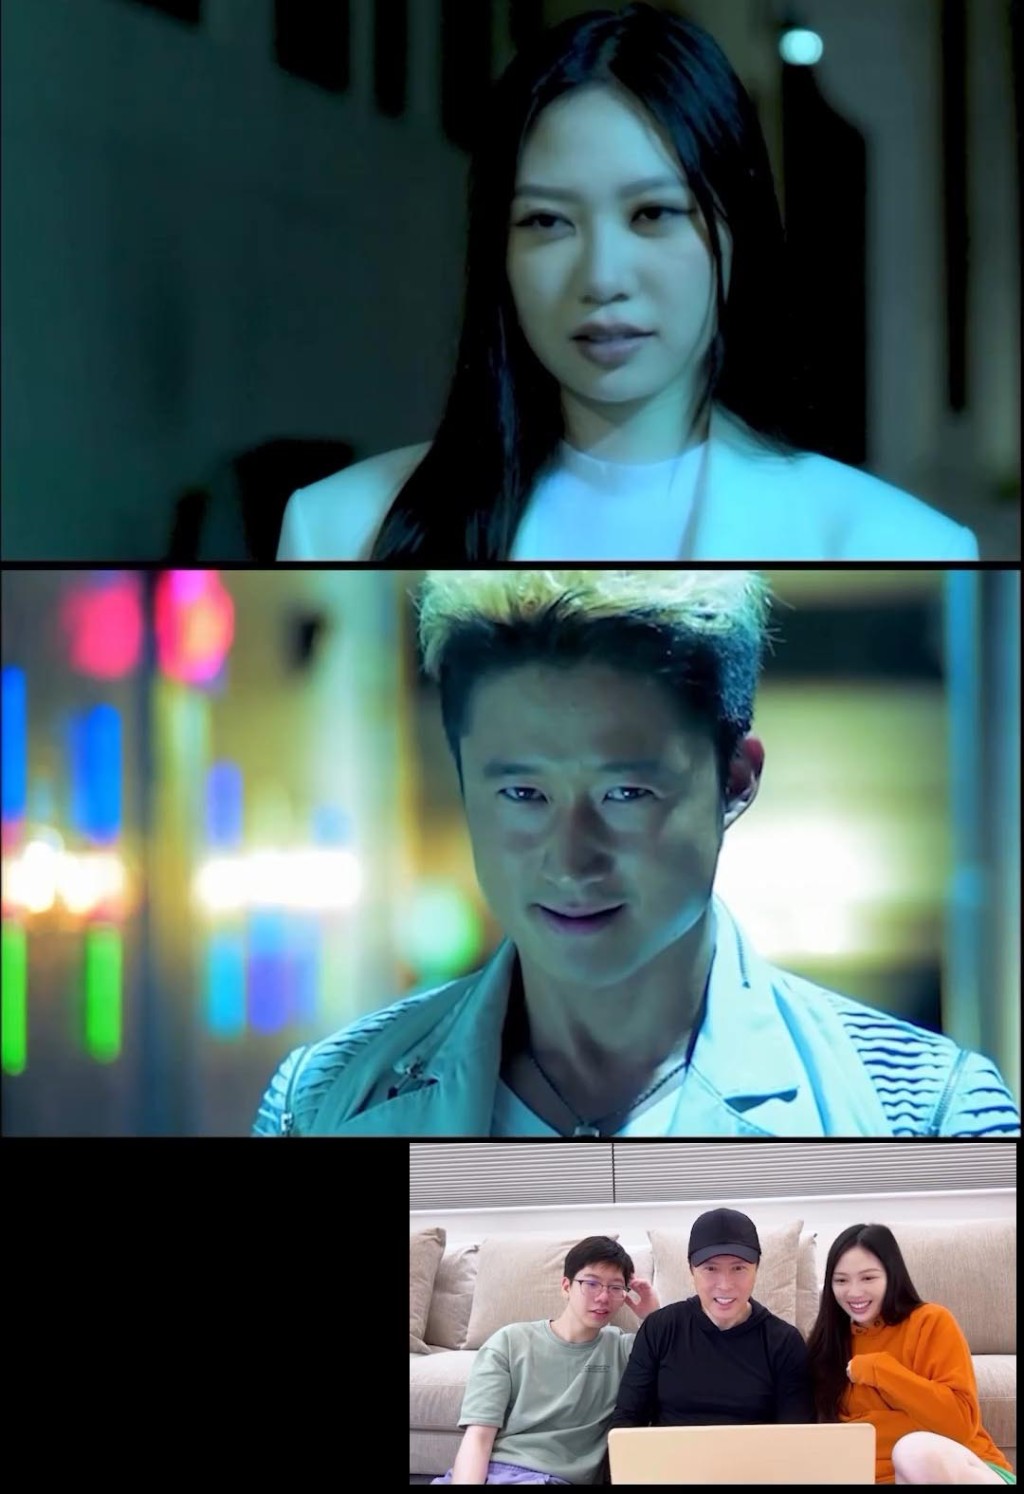 影片充滿電影感，甄濟如扮演吳京的角色，而甄濟嘉則飾演爸爸甄子丹的色。。